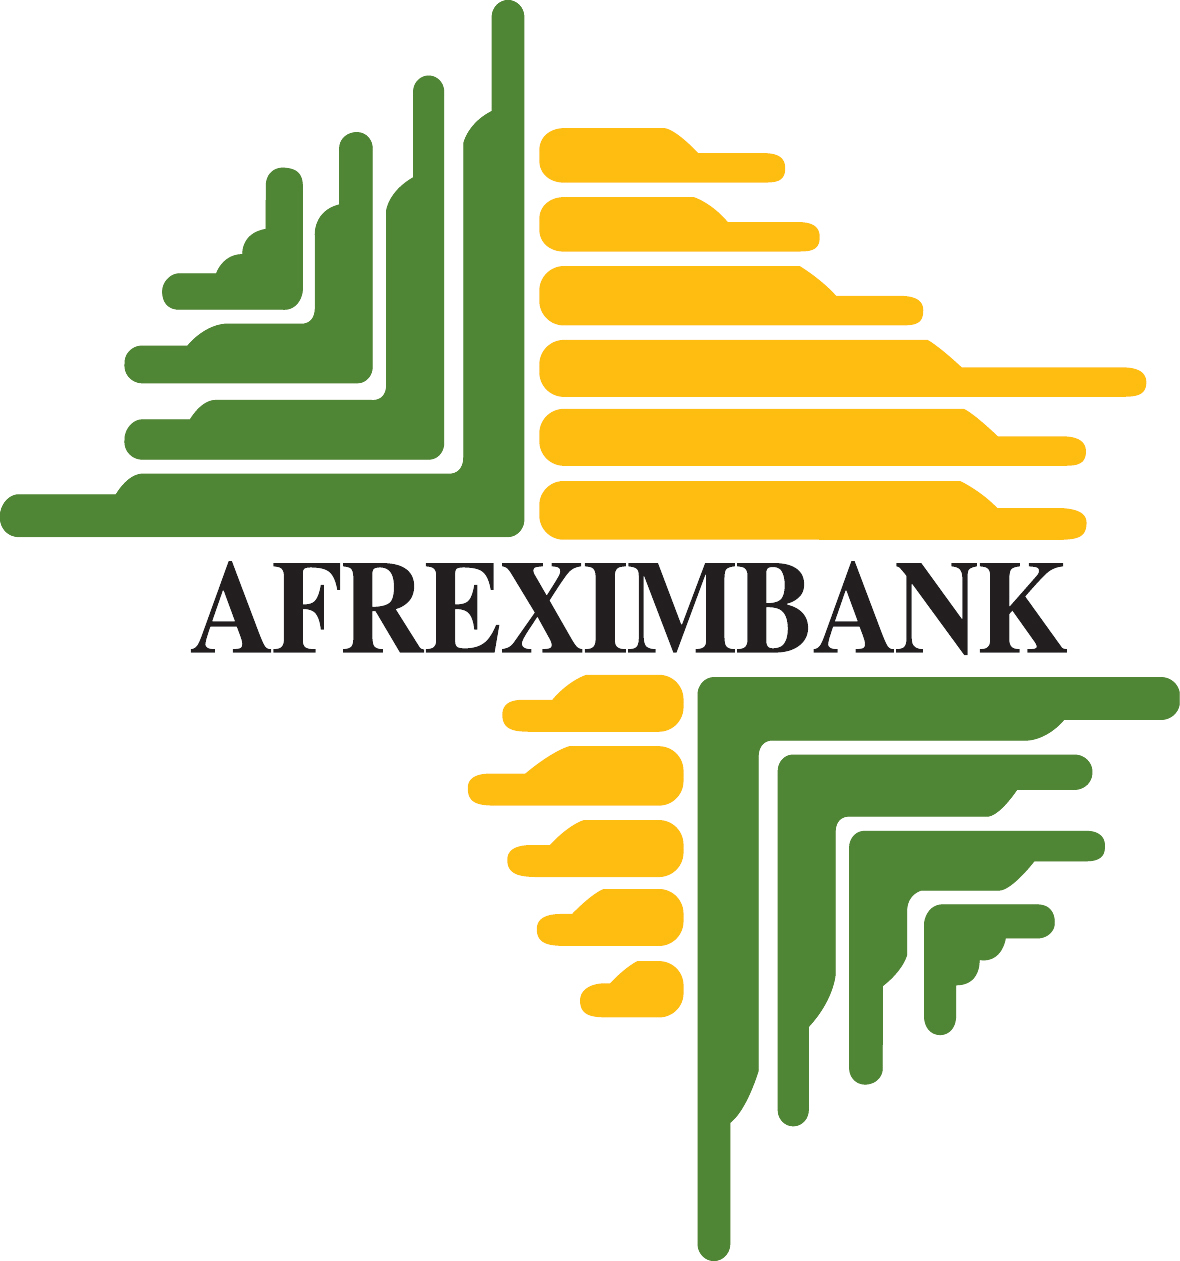 Afreximbank et Ecobank se donnent la main pour transformer l’Afrique